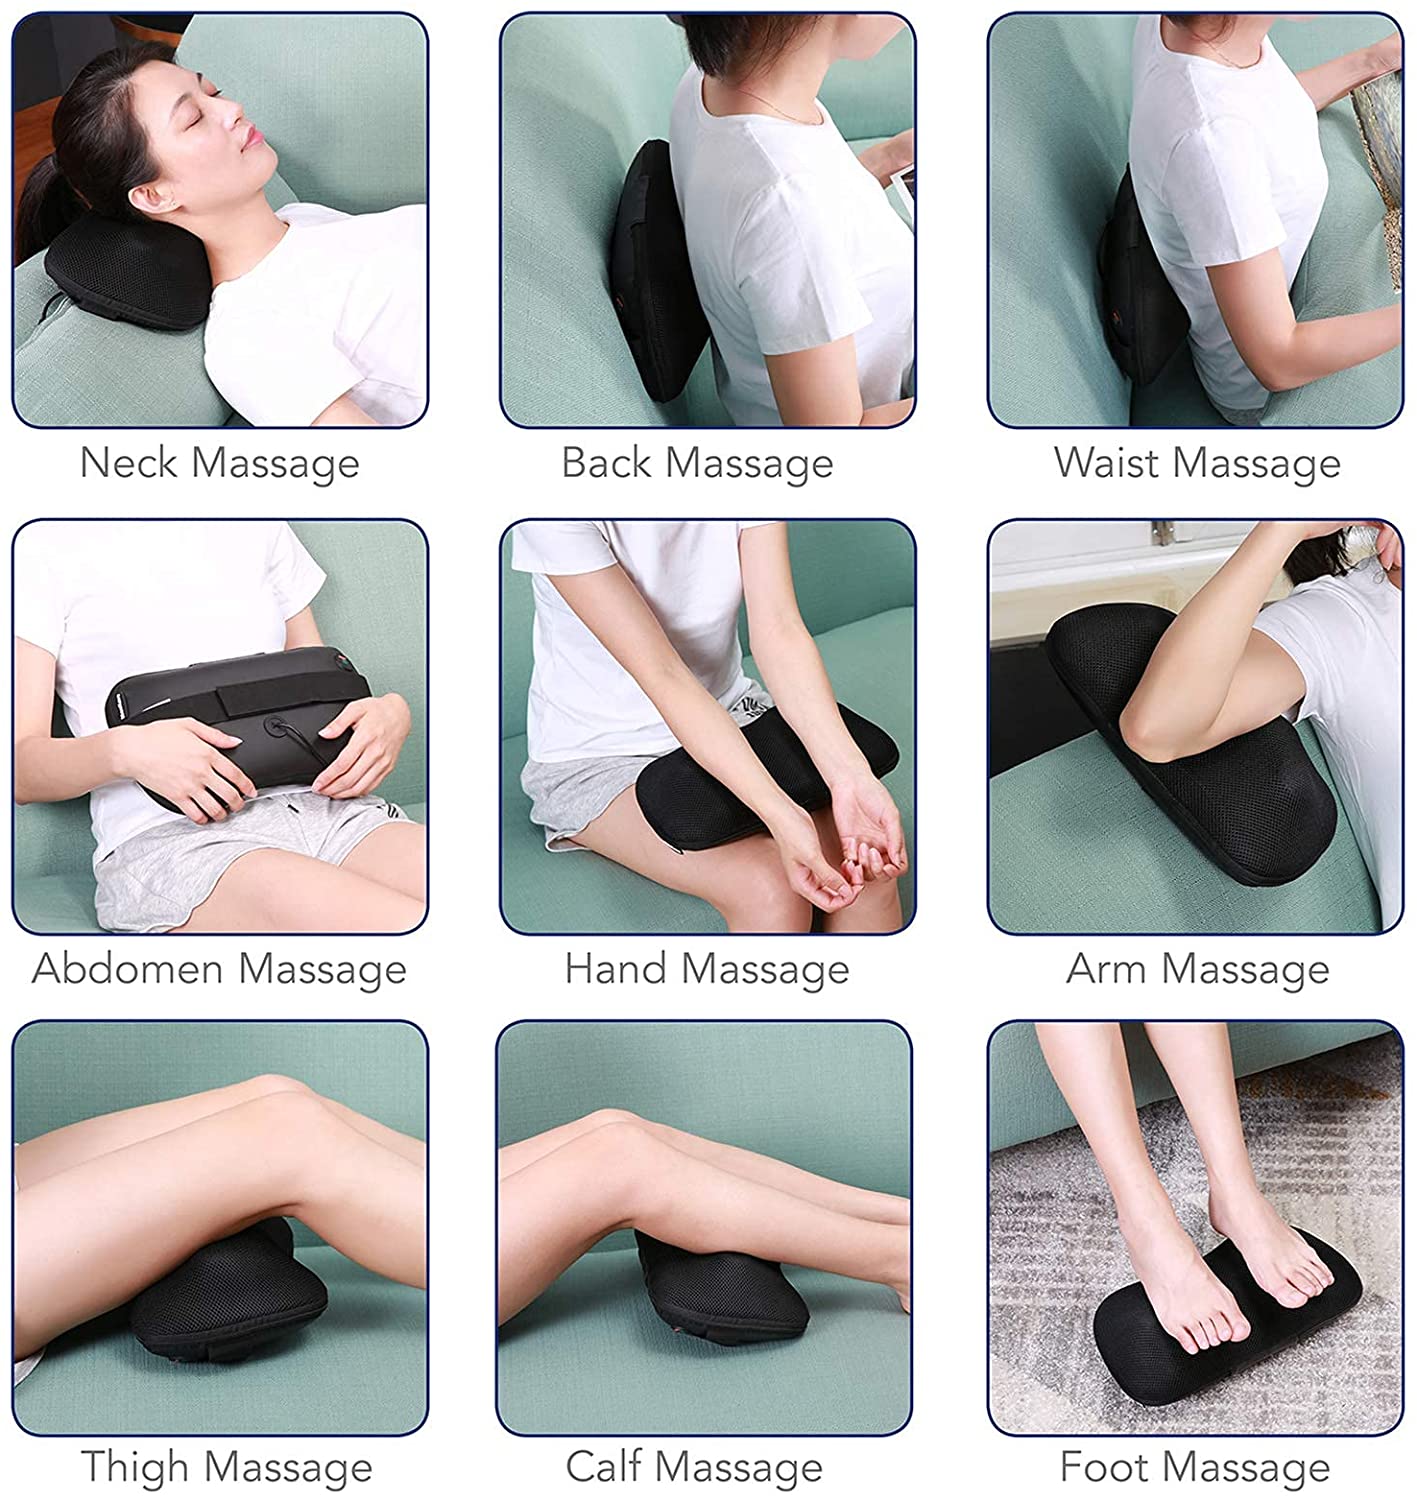  Shiatsu Massage Pillow Back and Neck Massager with